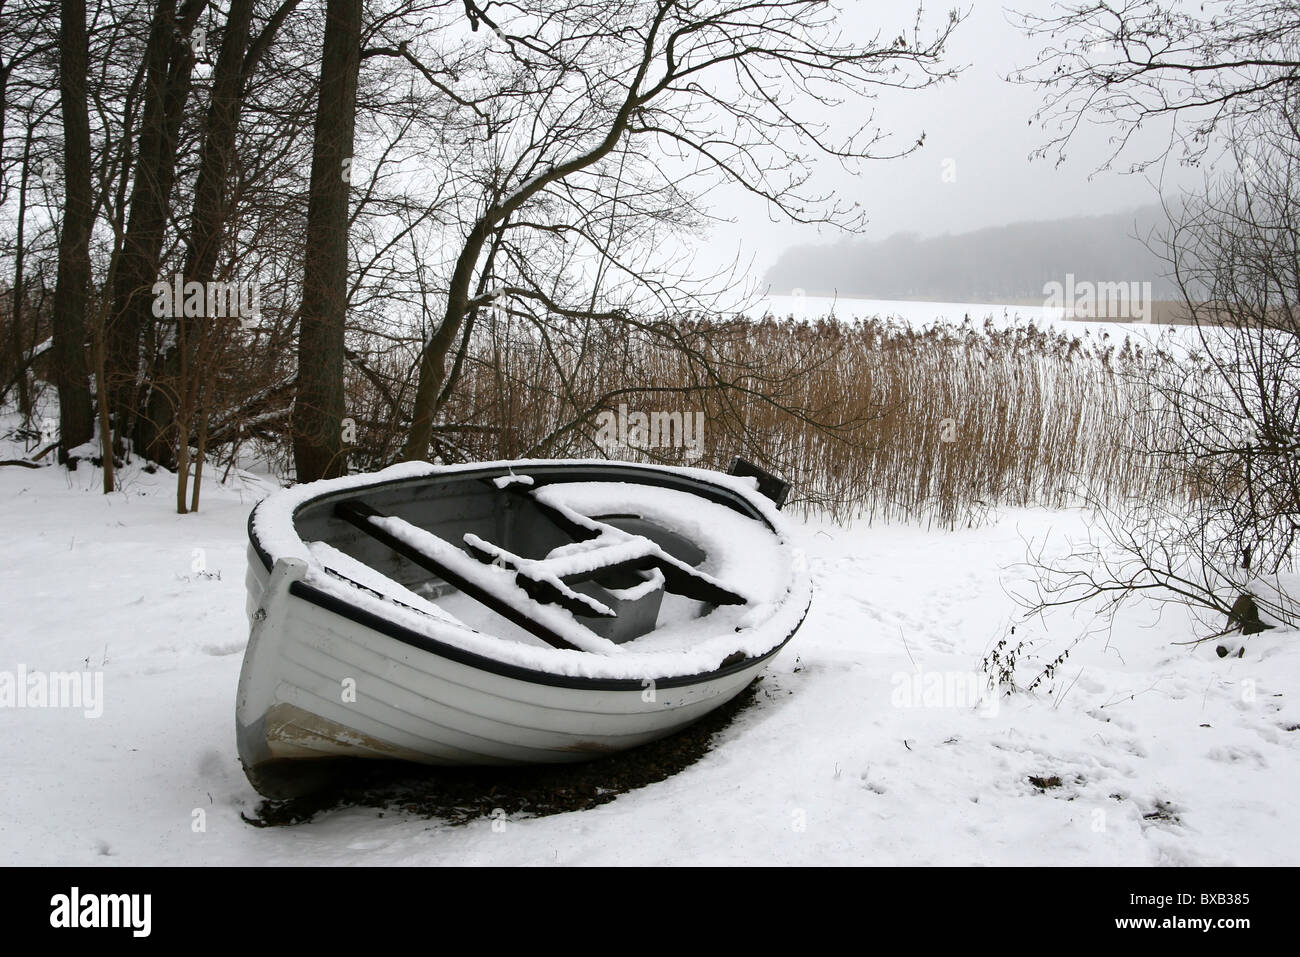 Sjælsø lake in Denmark, boat in snow Stock Photo